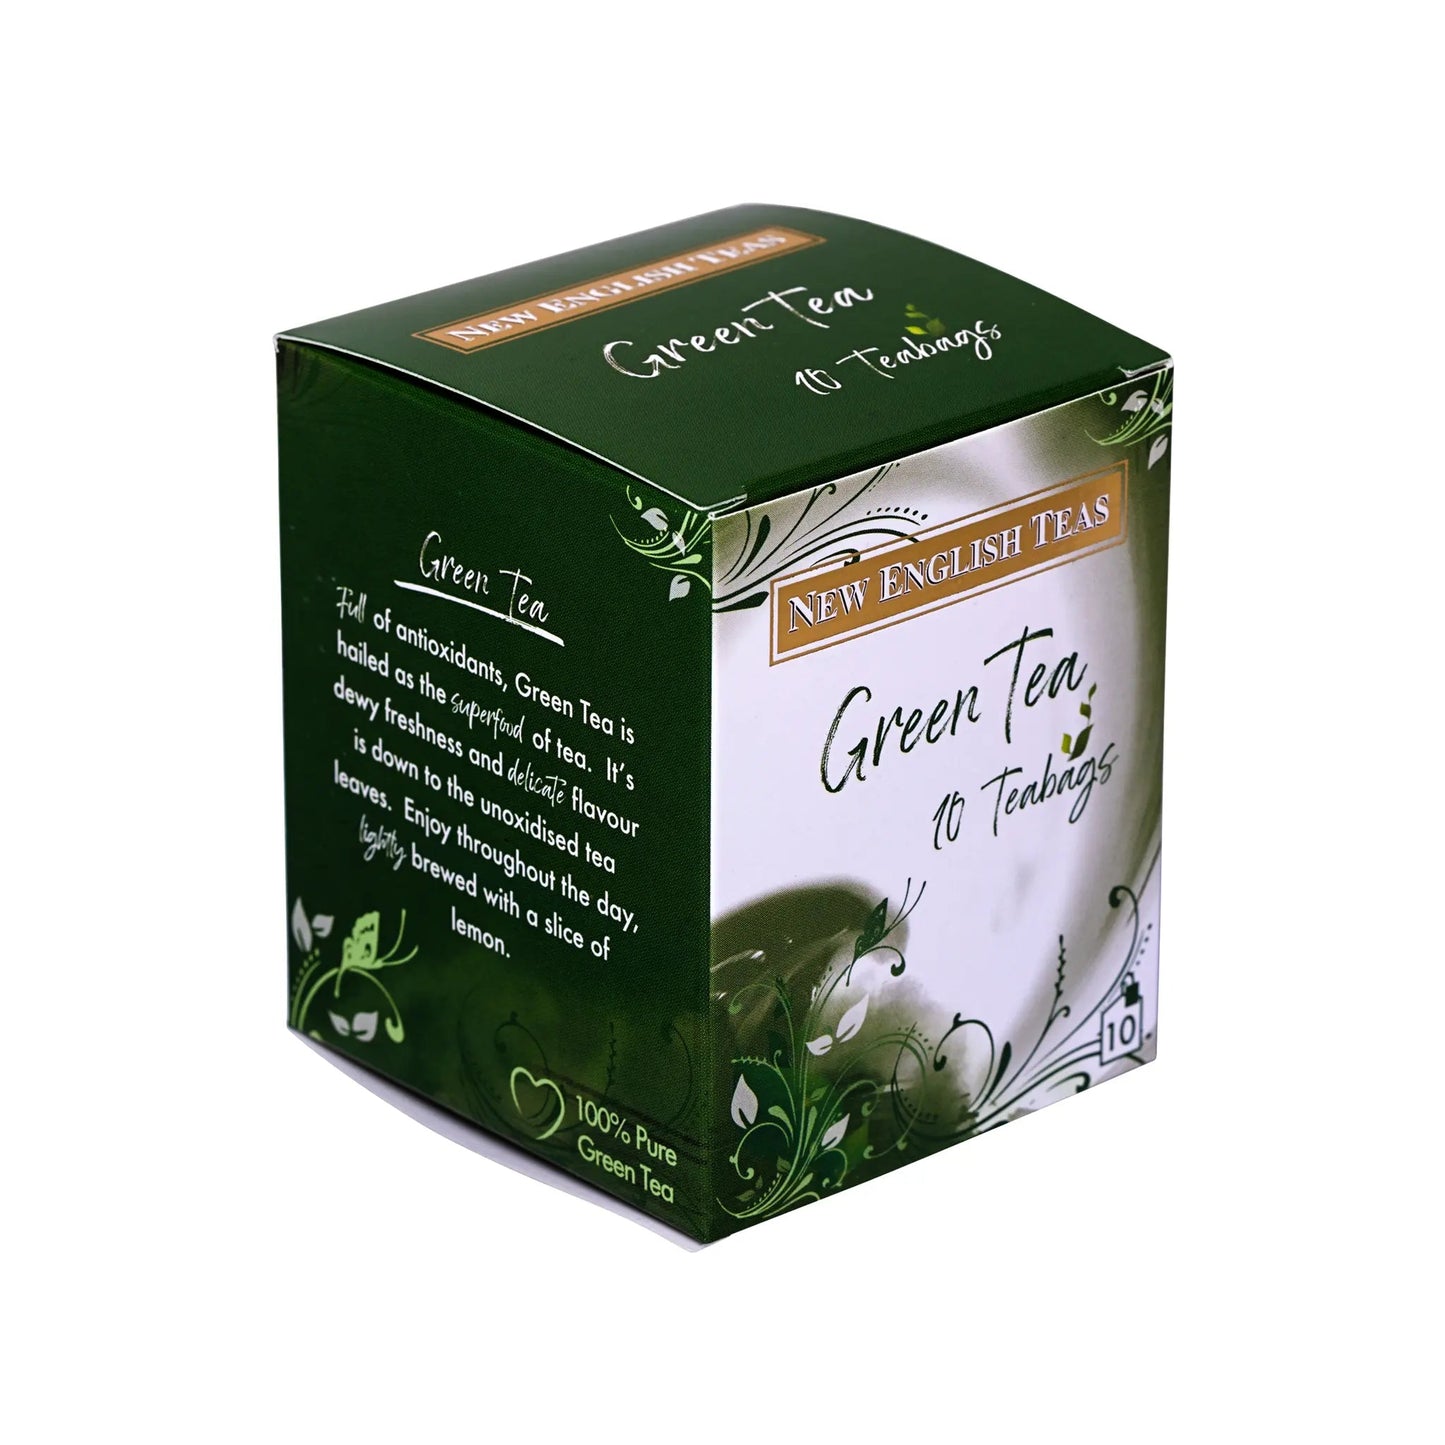 Green Tea 10 Individually Wrapped Teabags Tea Boxes New English Teas 